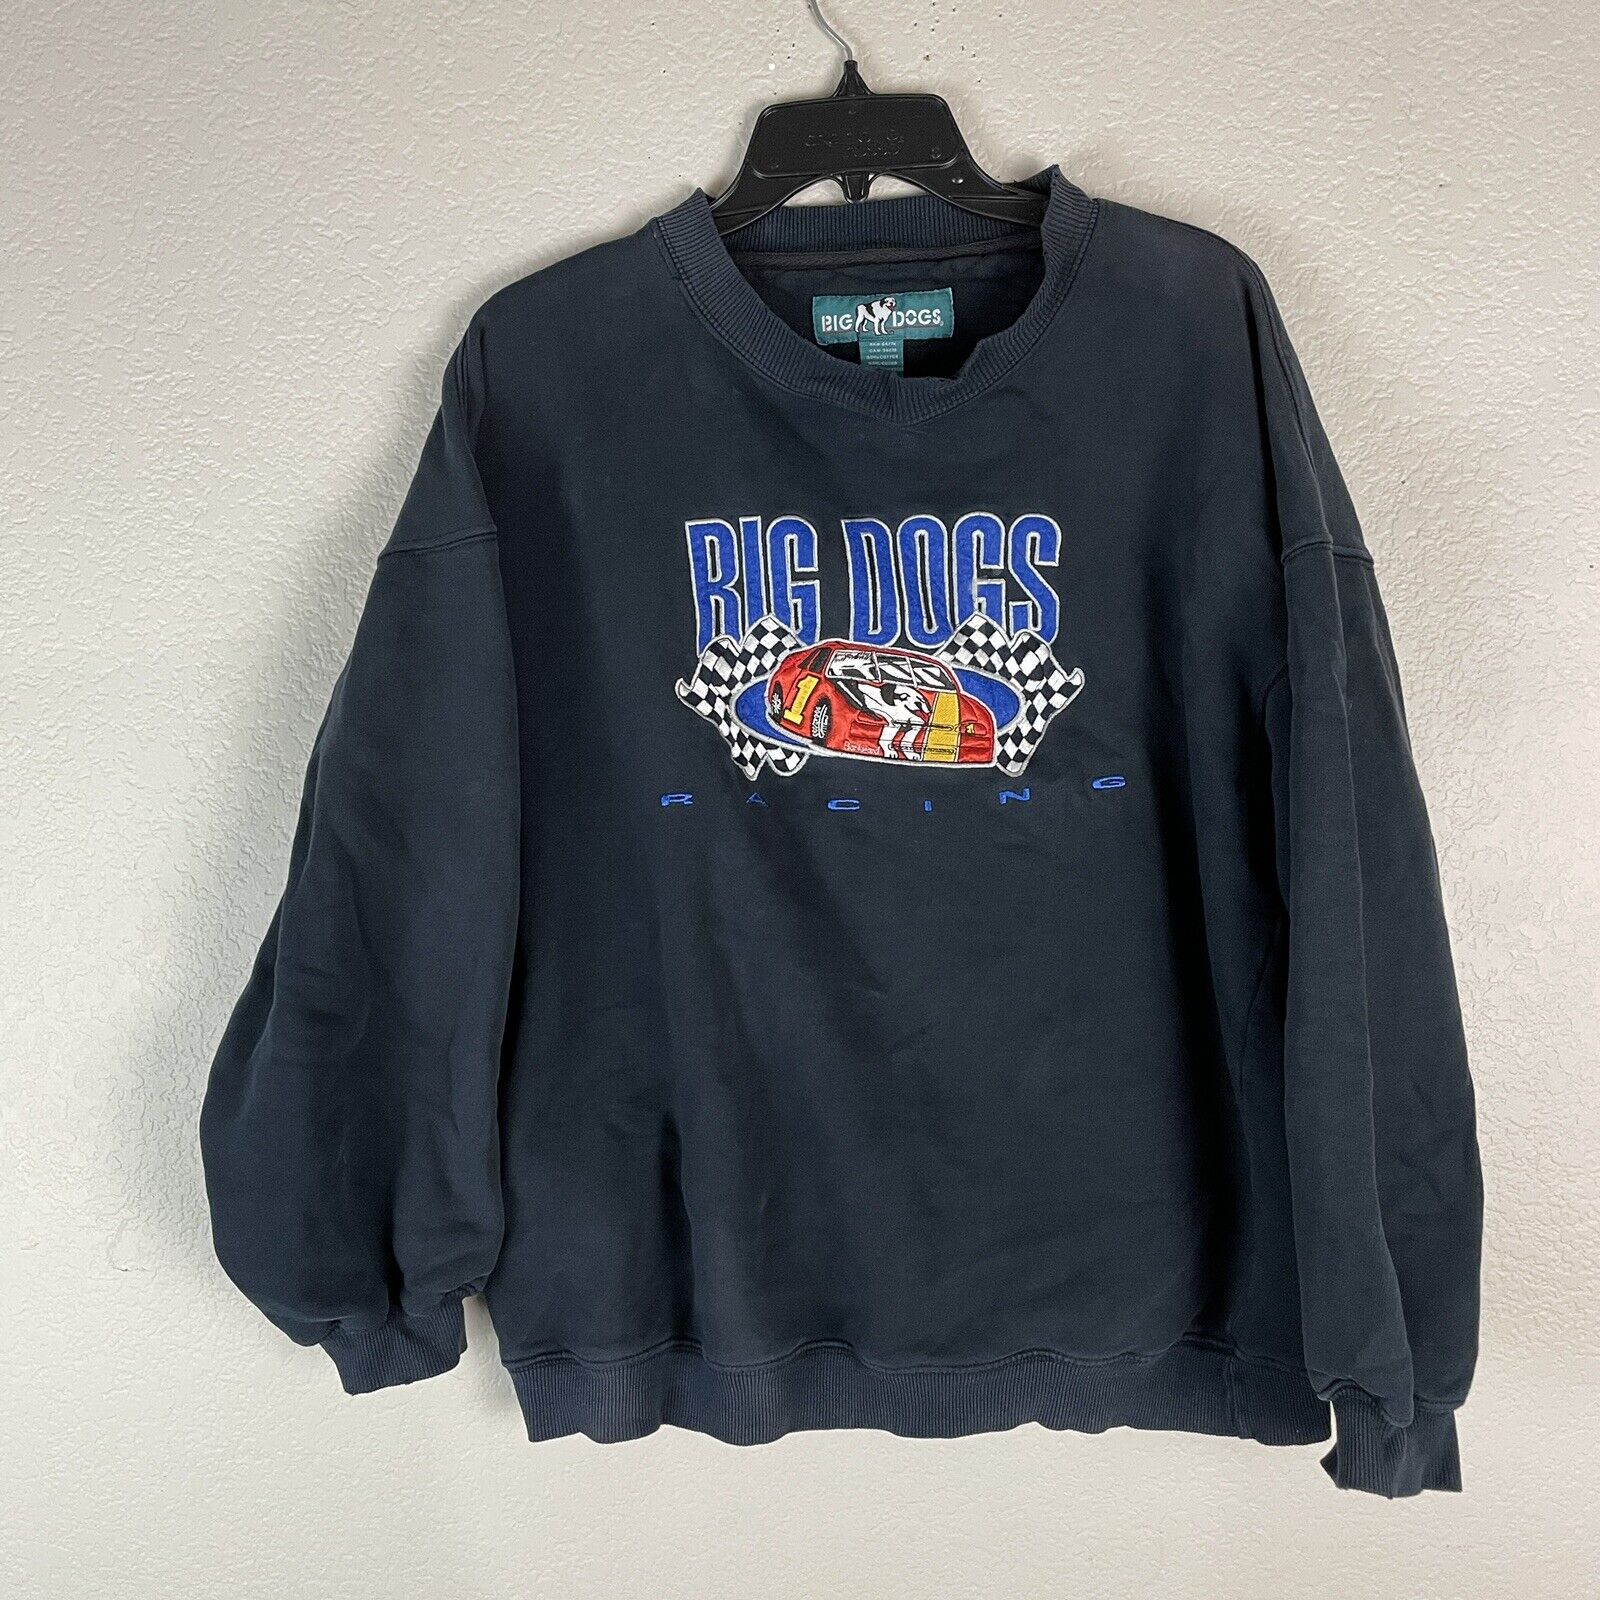 Vintage Big Dogs Racing Sweatshirt Size Large